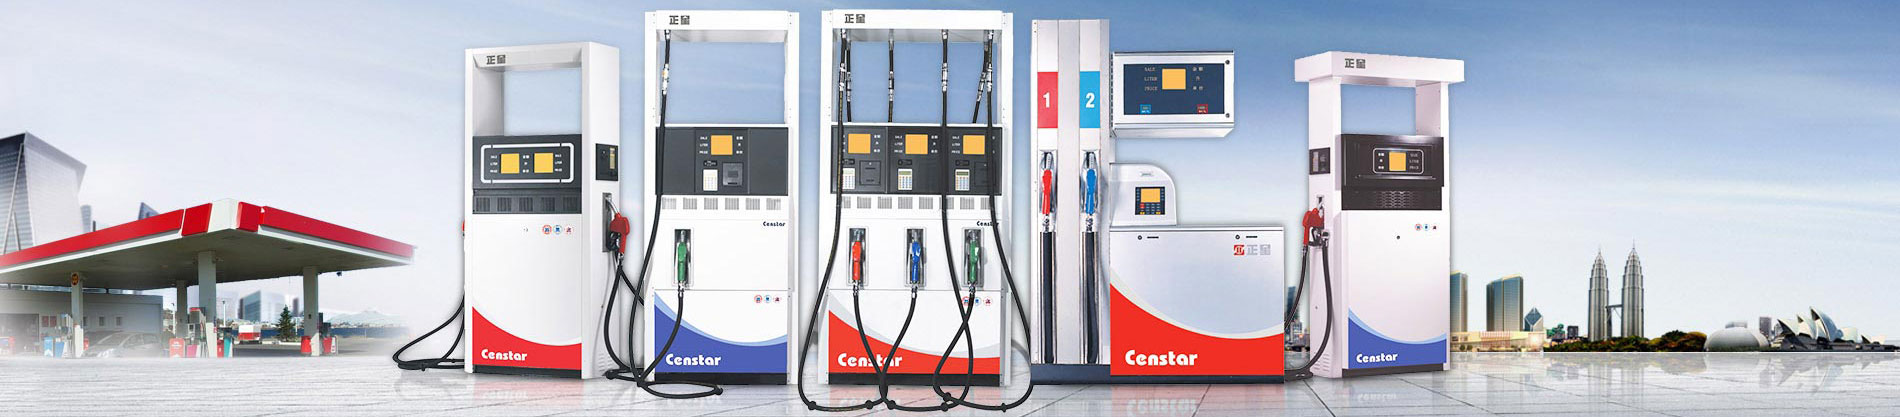 fuel station dispenser/ petrol station fuel dispenser/Gas Dispenser for LPG CNG